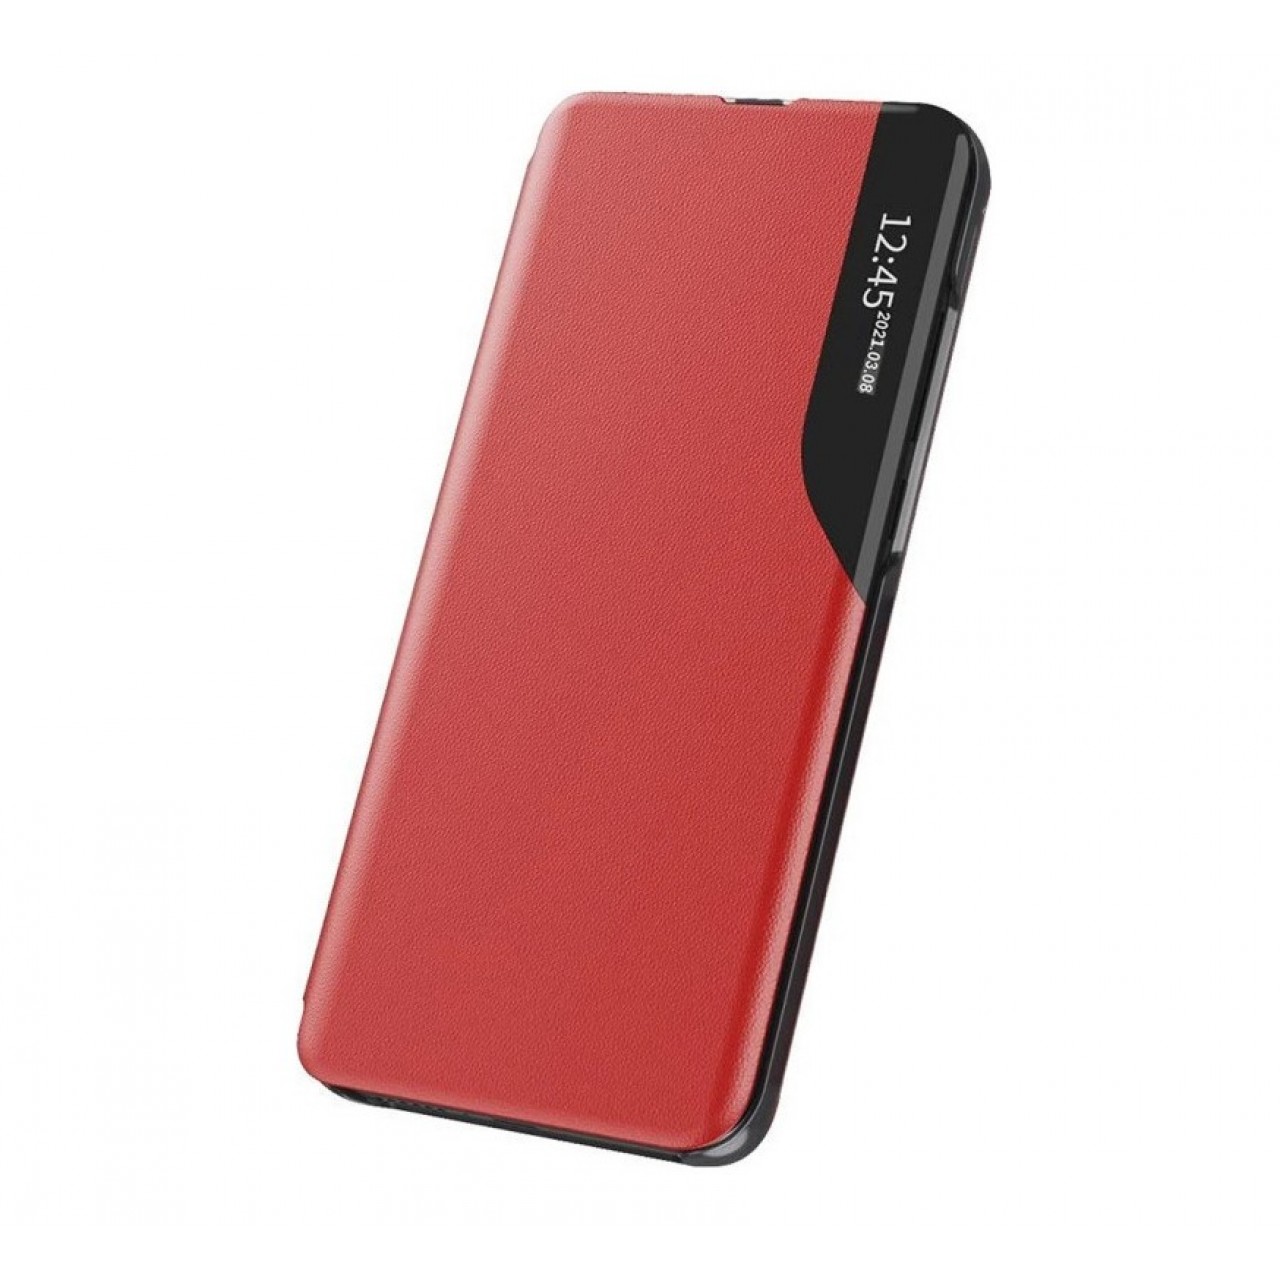 Θήκη Samsung Galaxy A32 5G Eco Leather View Book Δερματίνης  - 5991 - Κόκκινο - OEM